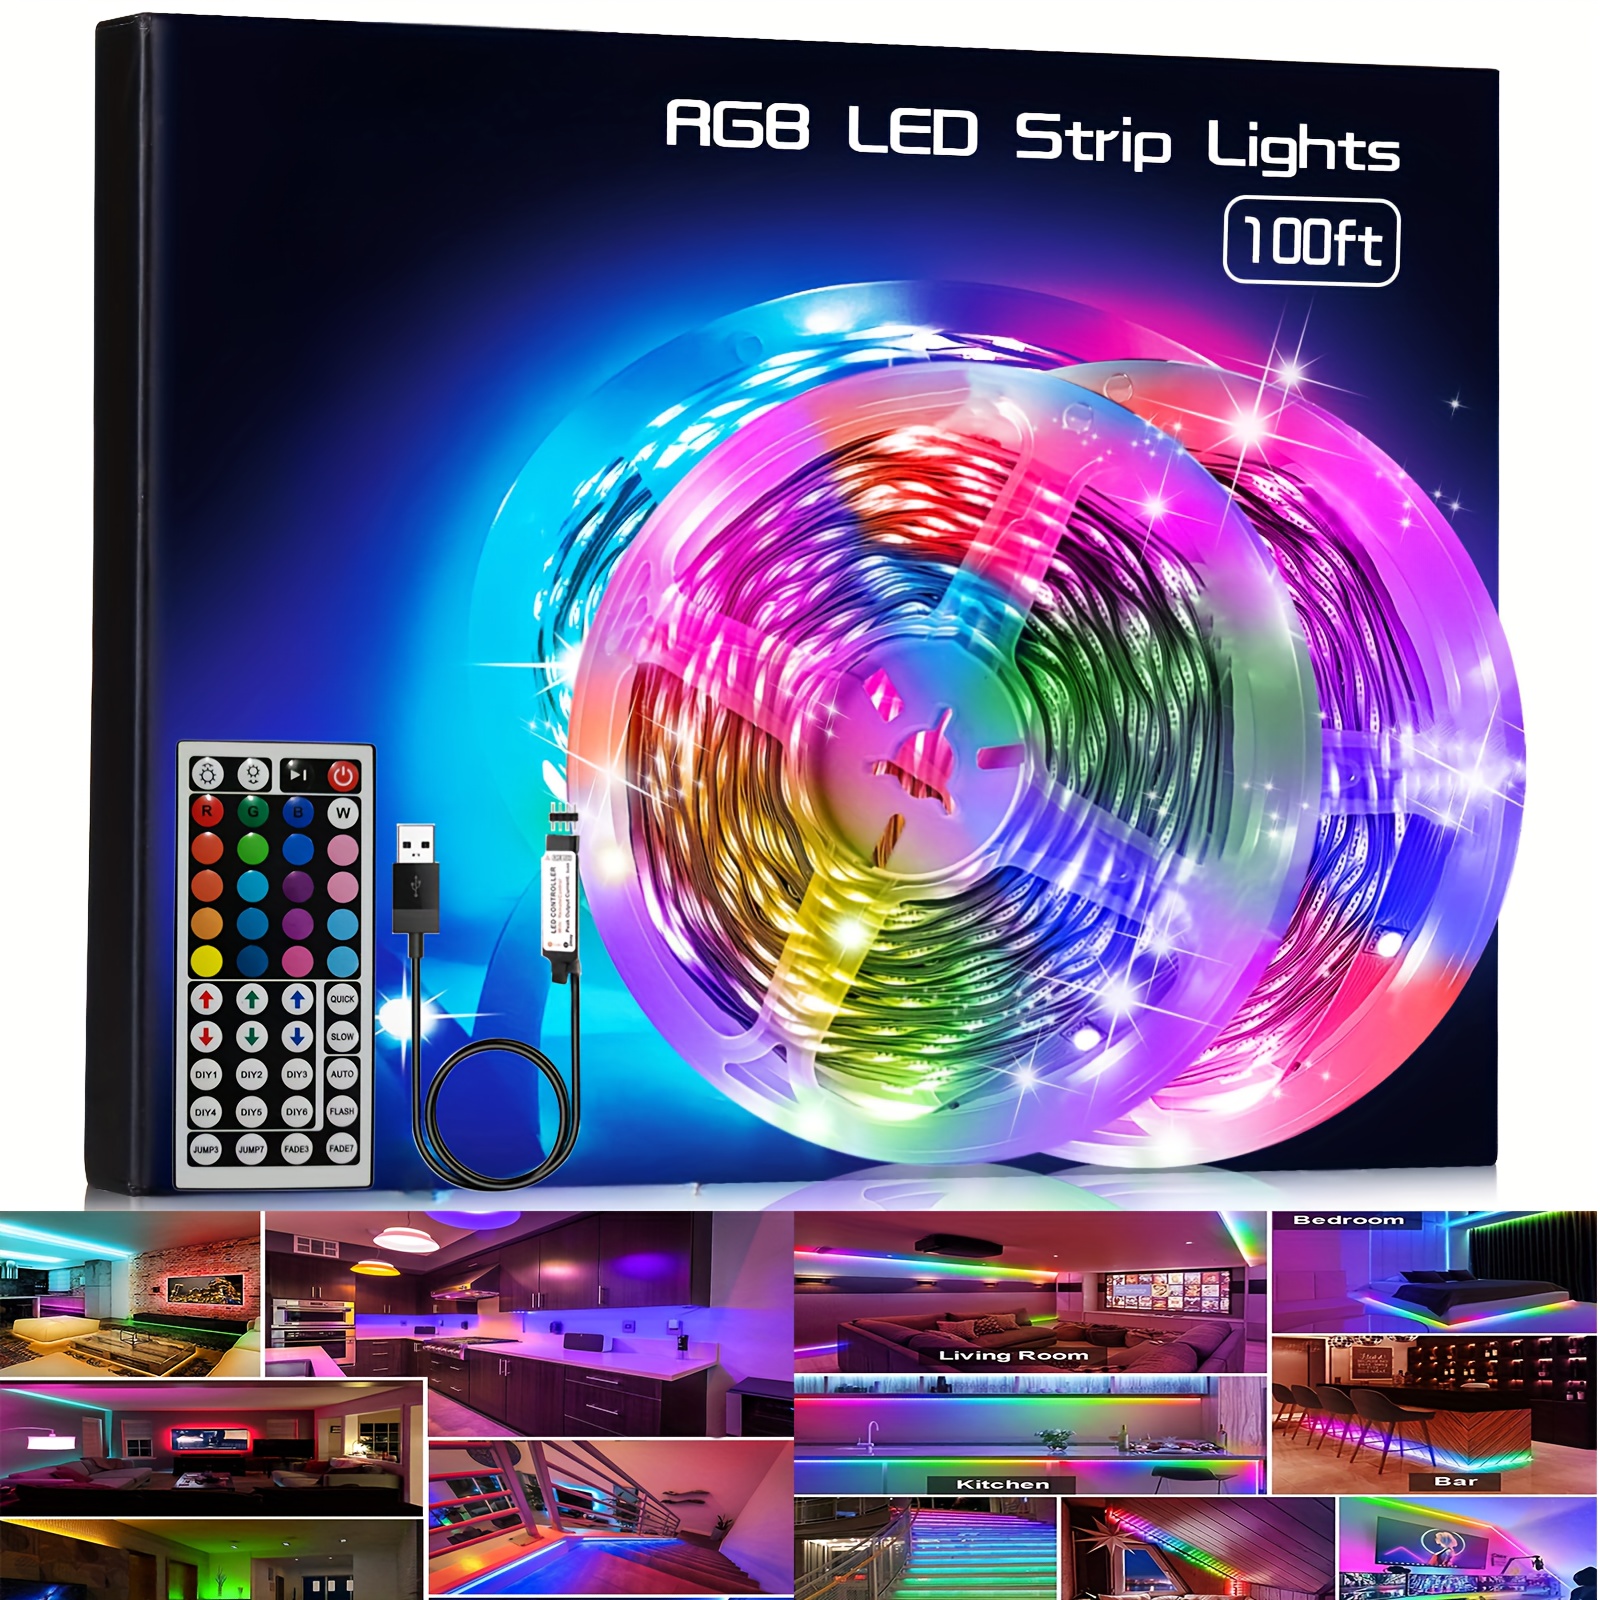 Guirlande lumineuses GENERIQUE Bande lumineuse LED avec lumière multicolore  USB 5050 RGB souple 5M（Contrôleur 17 touches） Blanc MK37